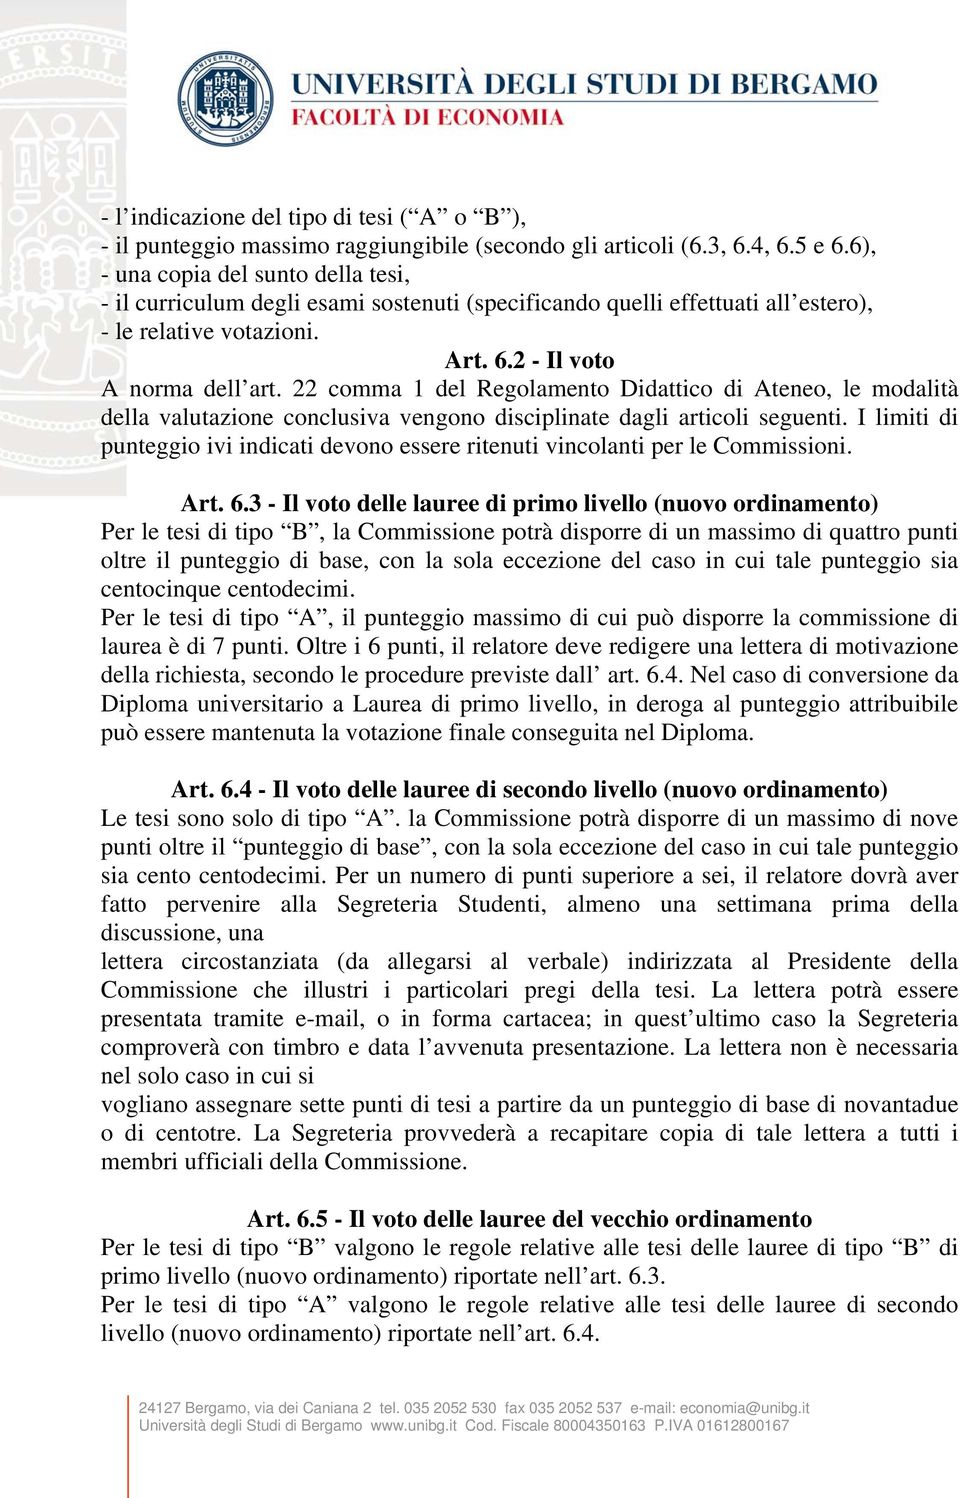 22 comma 1 del Regolamento Didattico di Ateneo, le modalità della valutazione conclusiva vengono disciplinate dagli articoli seguenti.